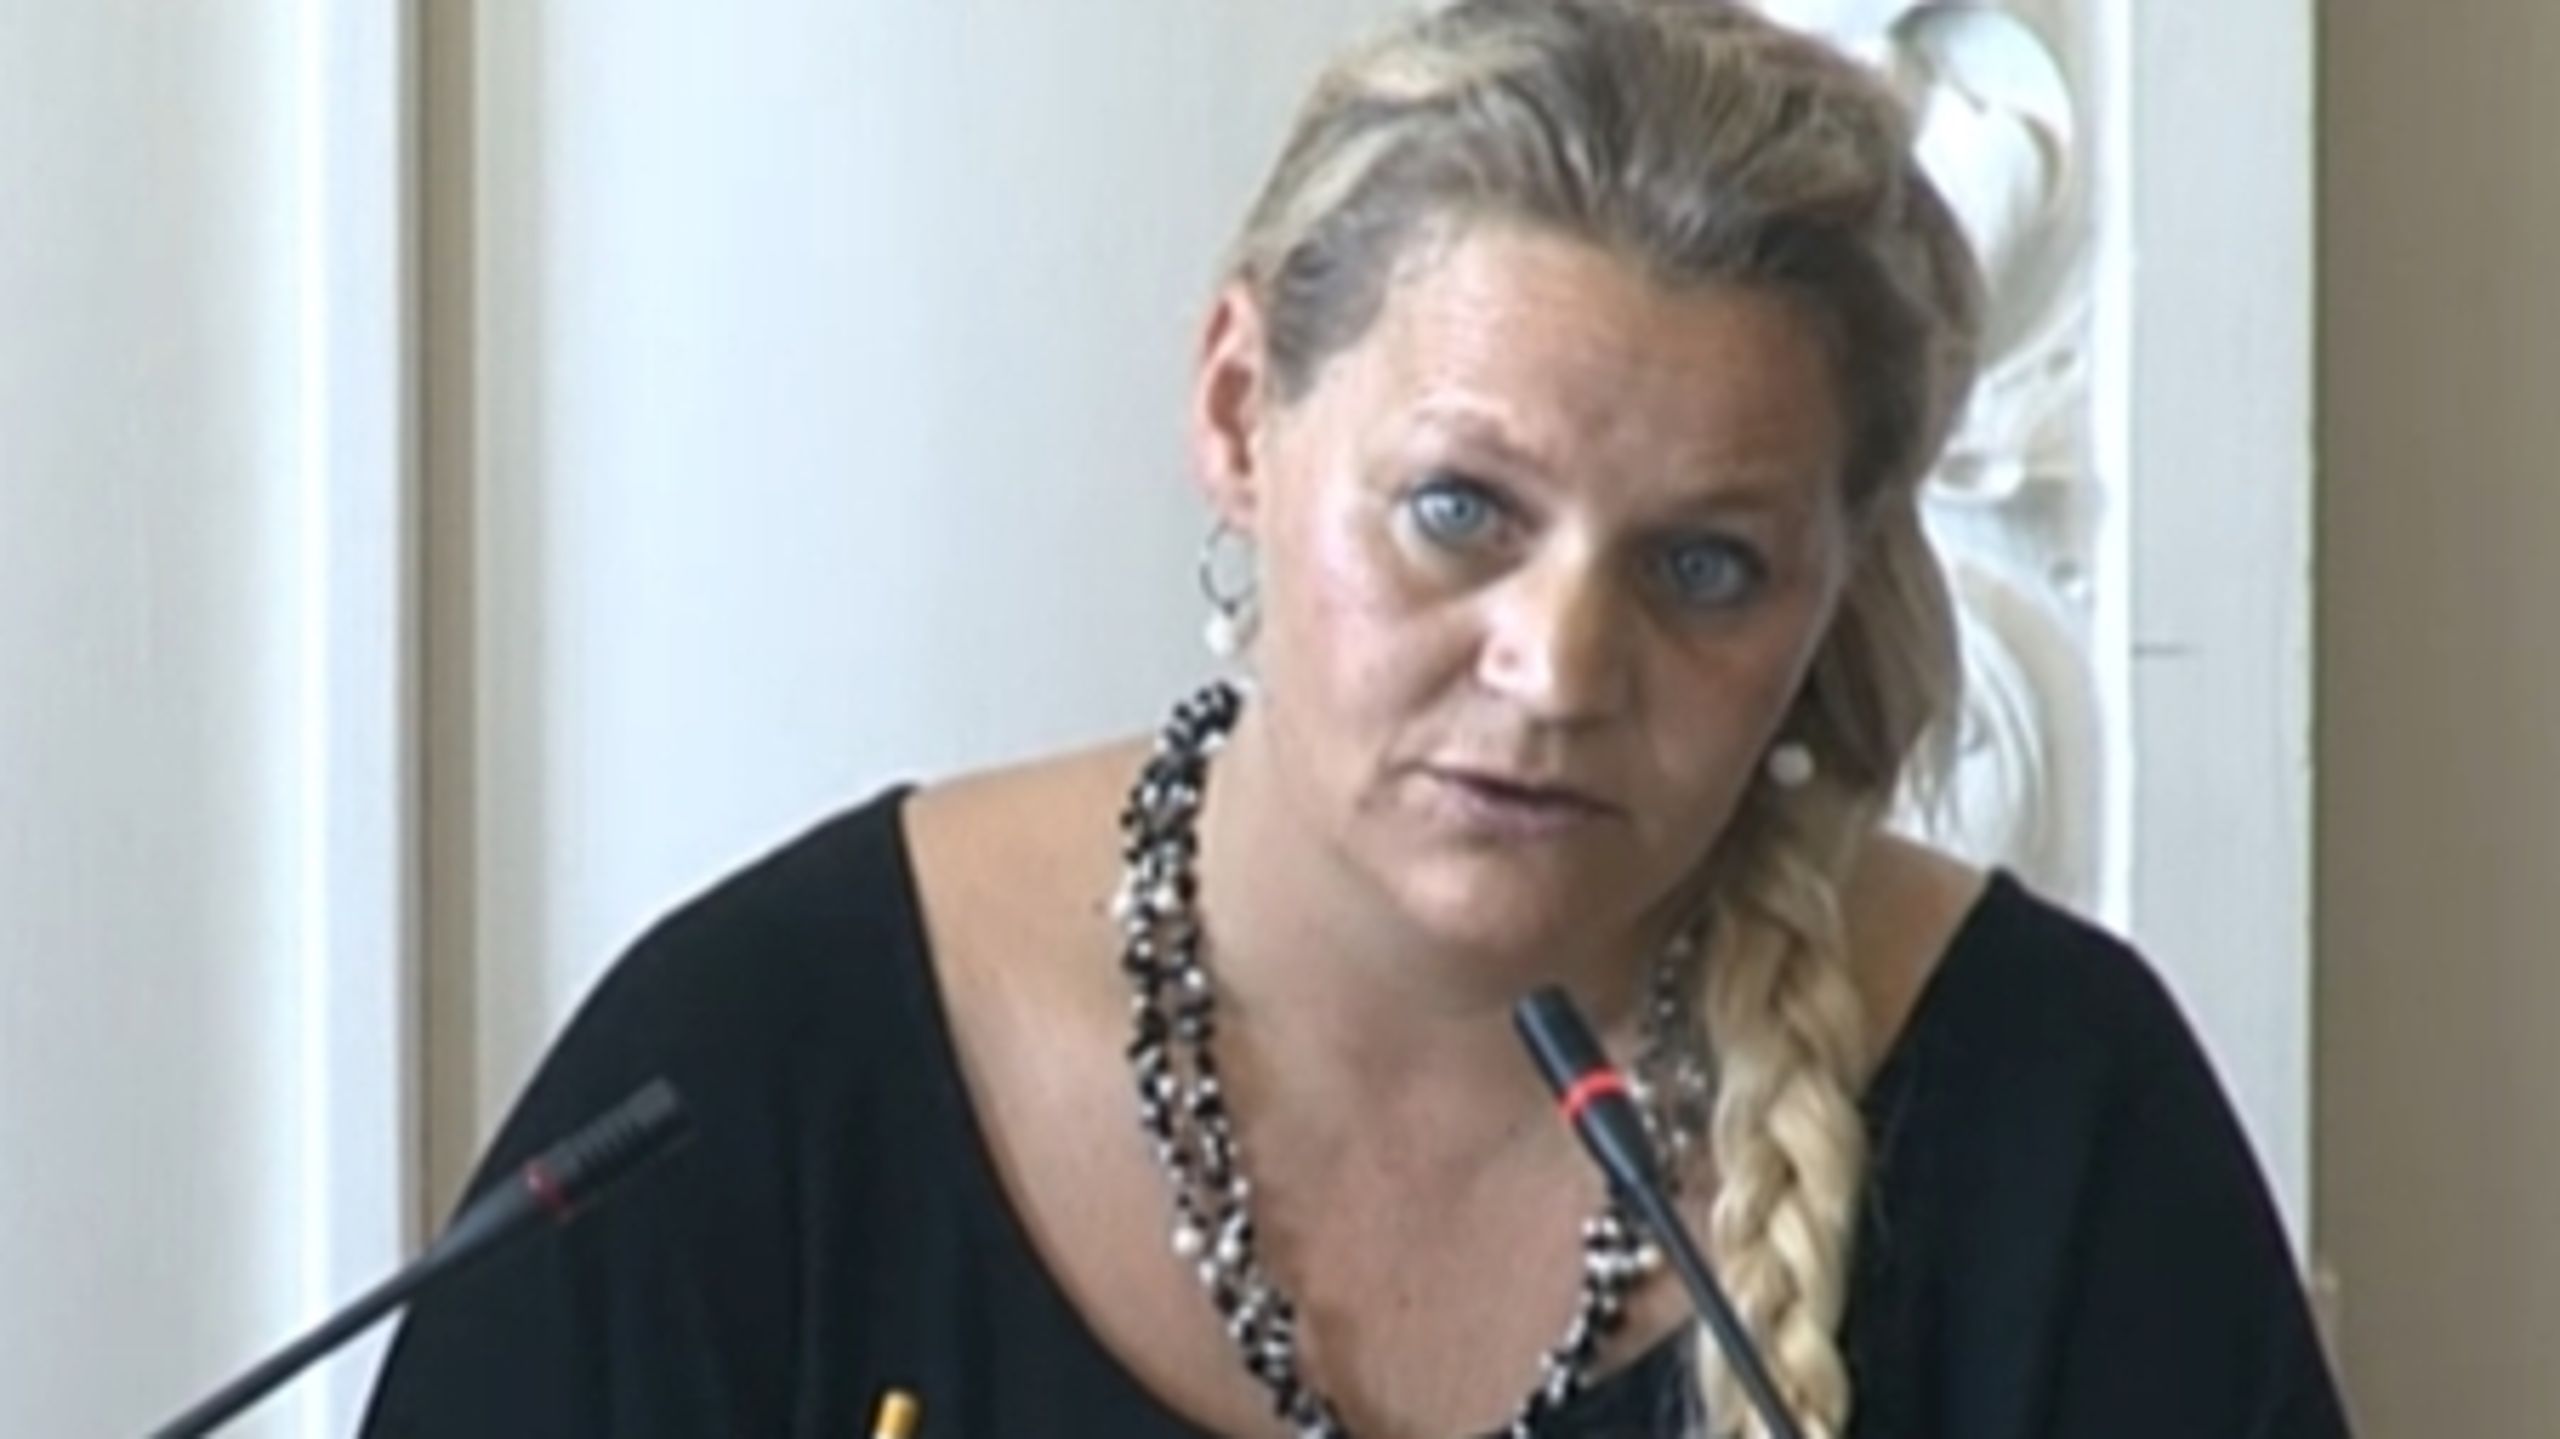 Dansk Folkepartis boligordfører, Karina Adsbøl, har spurgt boligministeren, om han vil sikre fælles ventelister til almene boliger i de danske byer. Ministeren afviser at lovgive på området. 